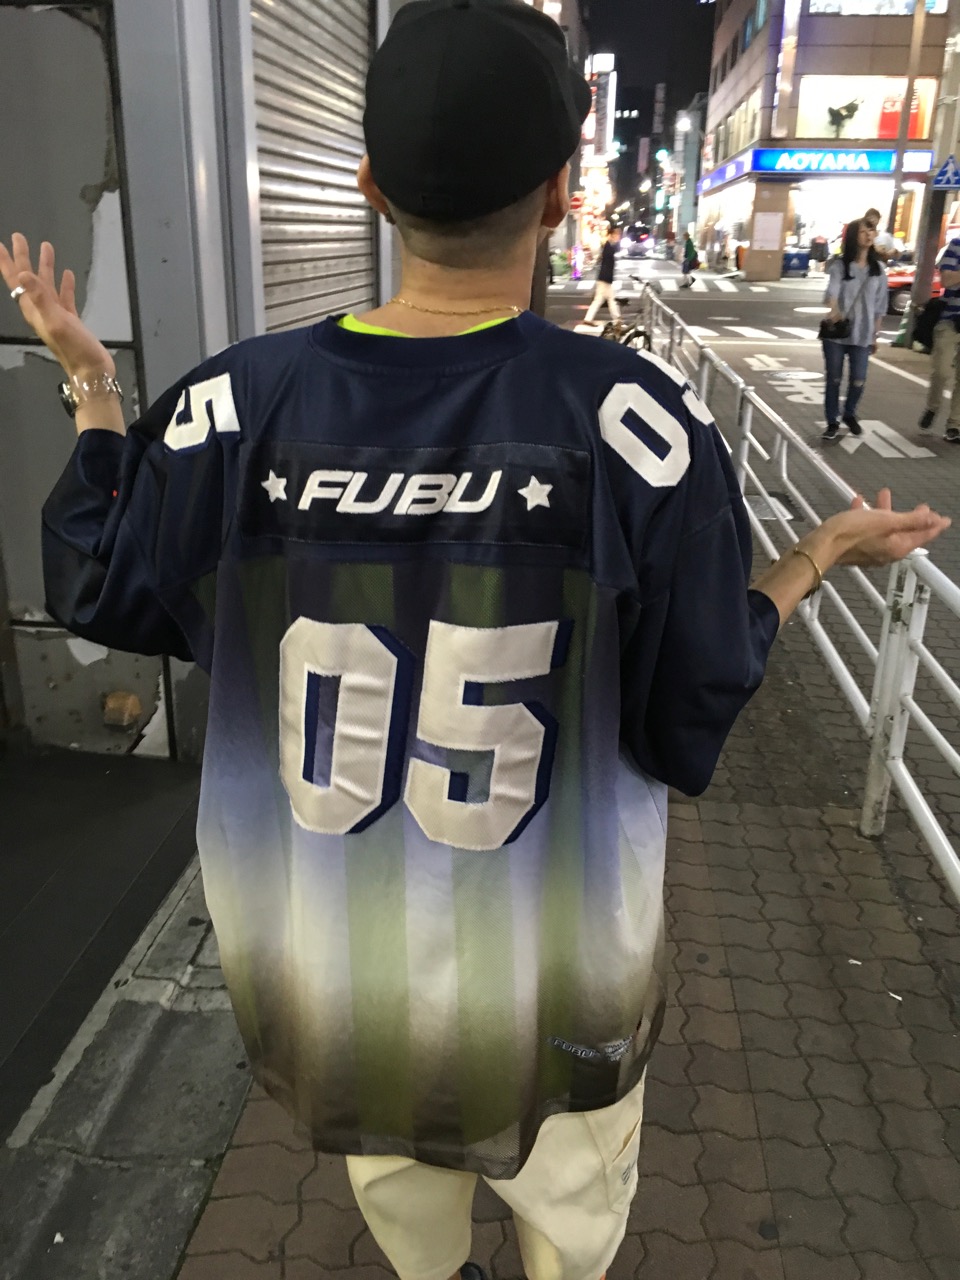 FUBU jersey style